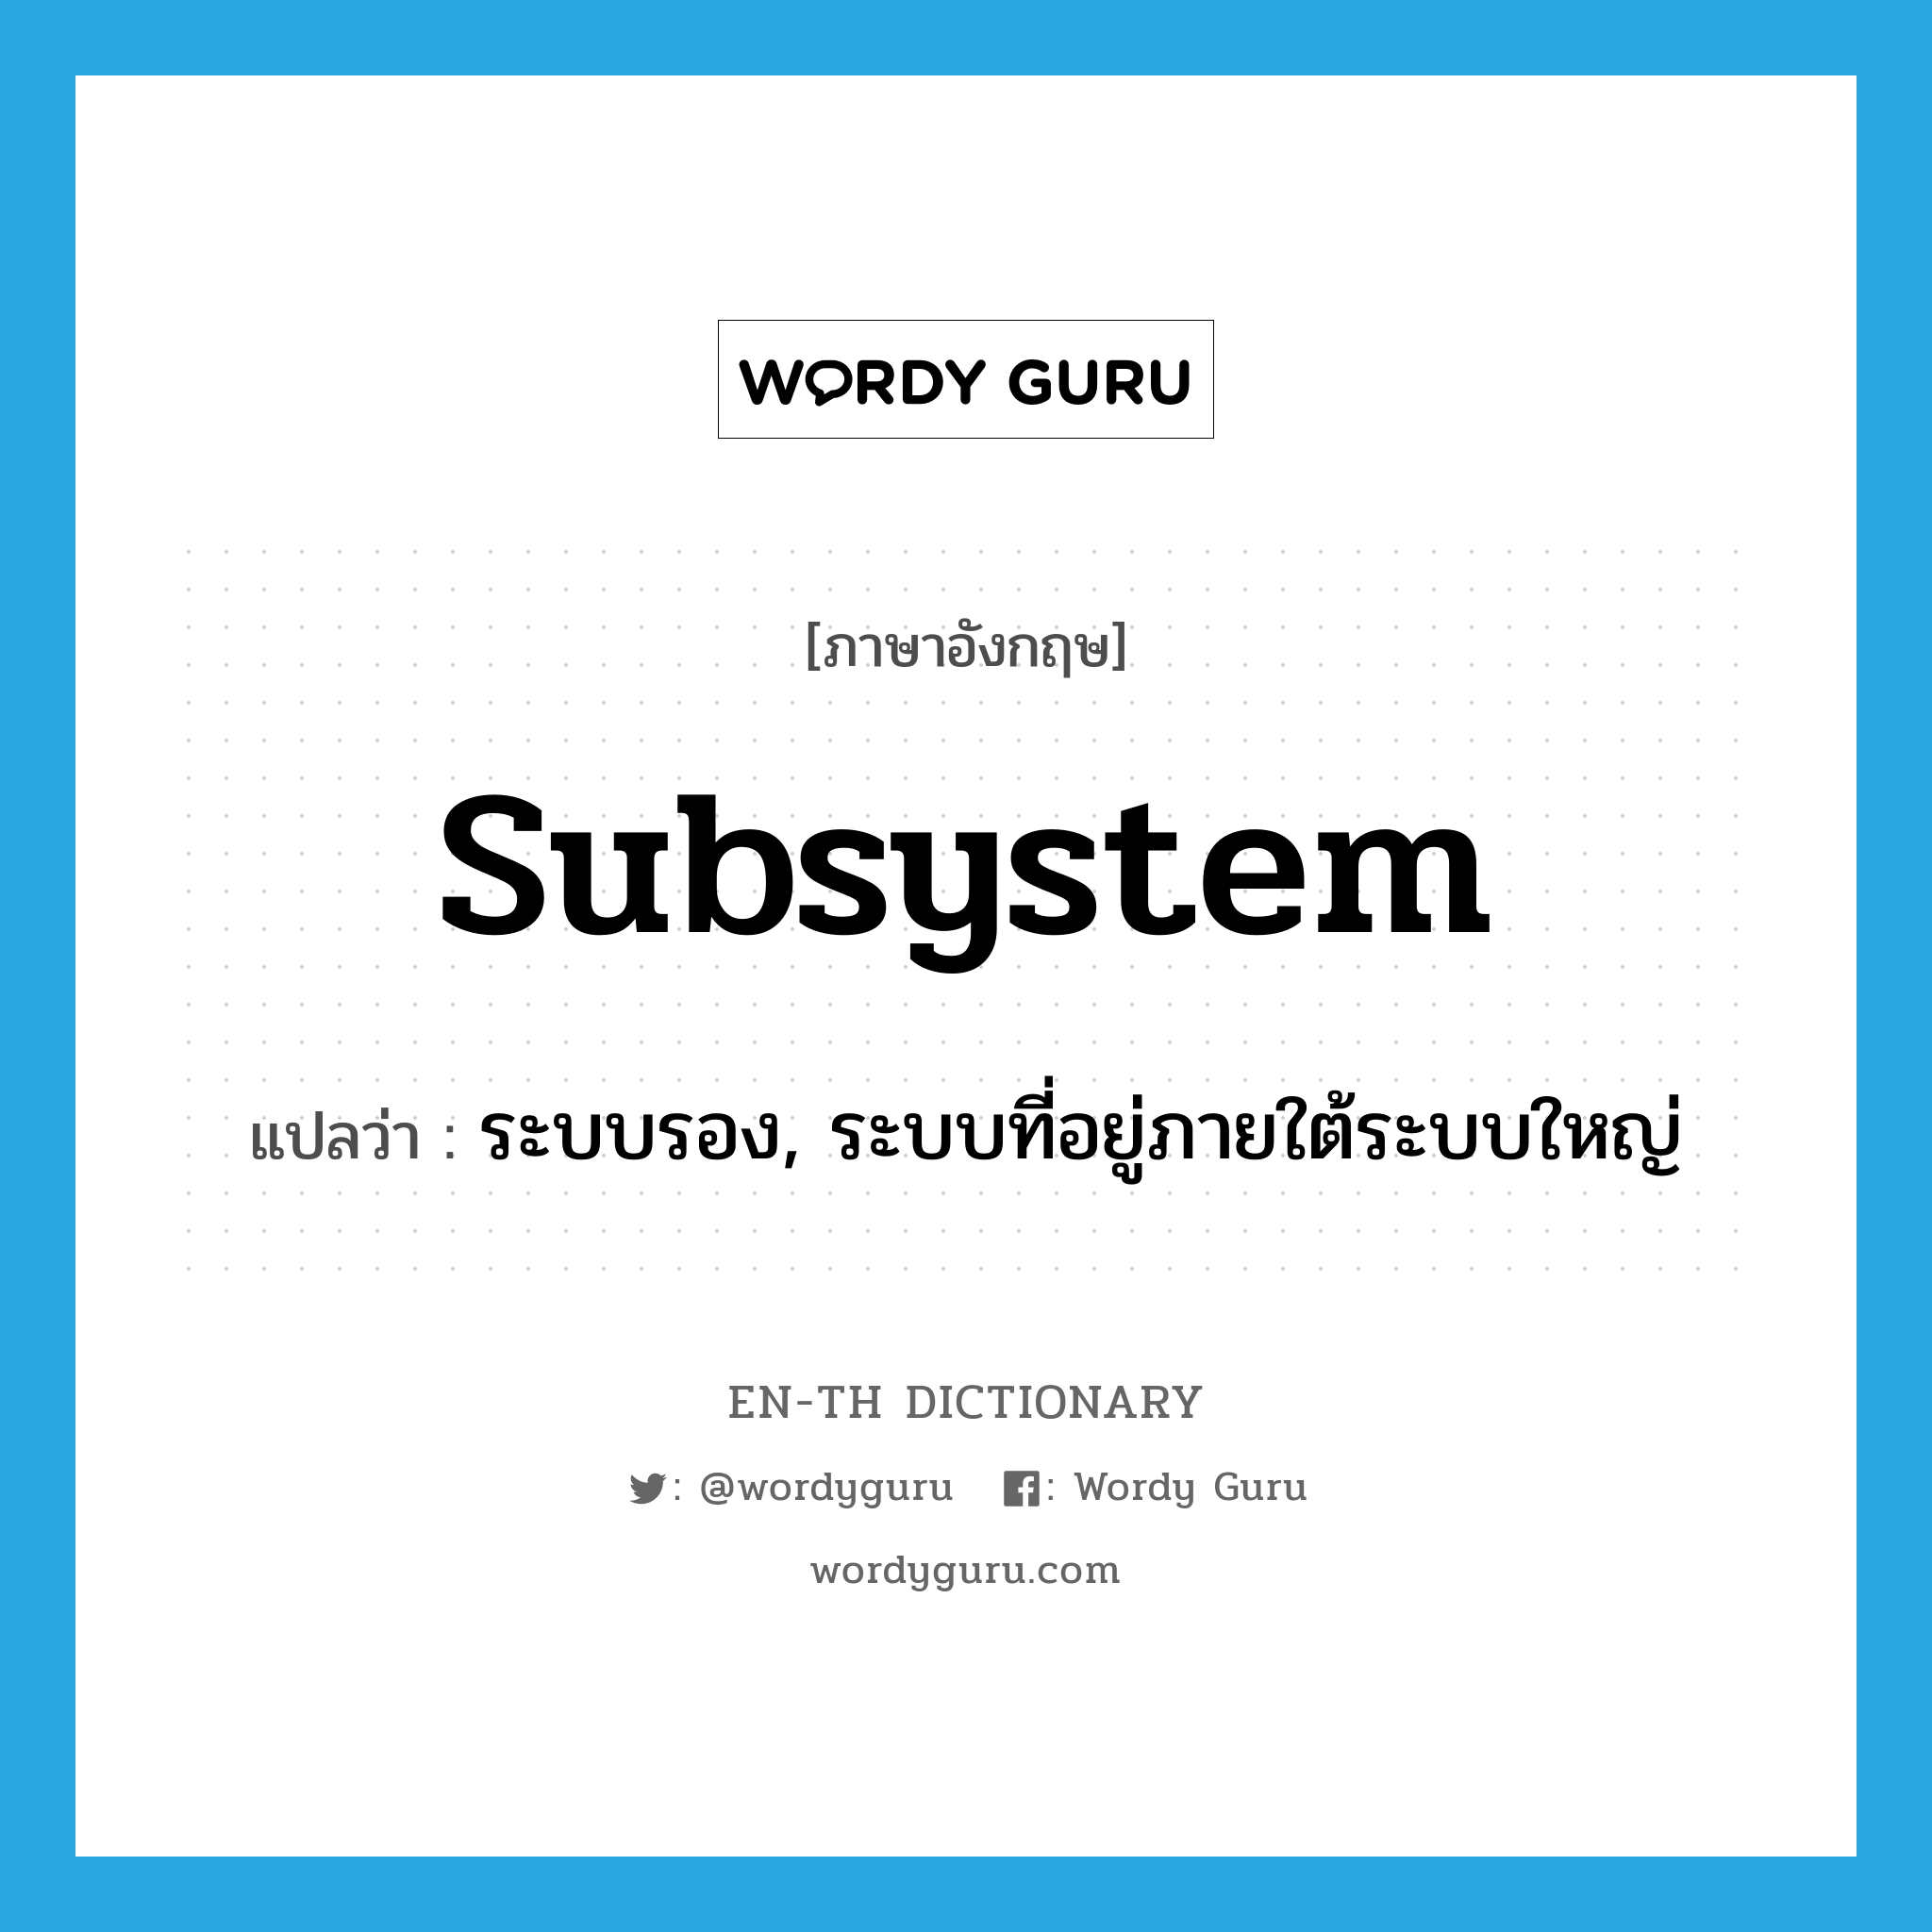 ระบบรอง, ระบบที่อยู่ภายใต้ระบบใหญ่ ภาษาอังกฤษ?, คำศัพท์ภาษาอังกฤษ ระบบรอง, ระบบที่อยู่ภายใต้ระบบใหญ่ แปลว่า subsystem ประเภท N หมวด N